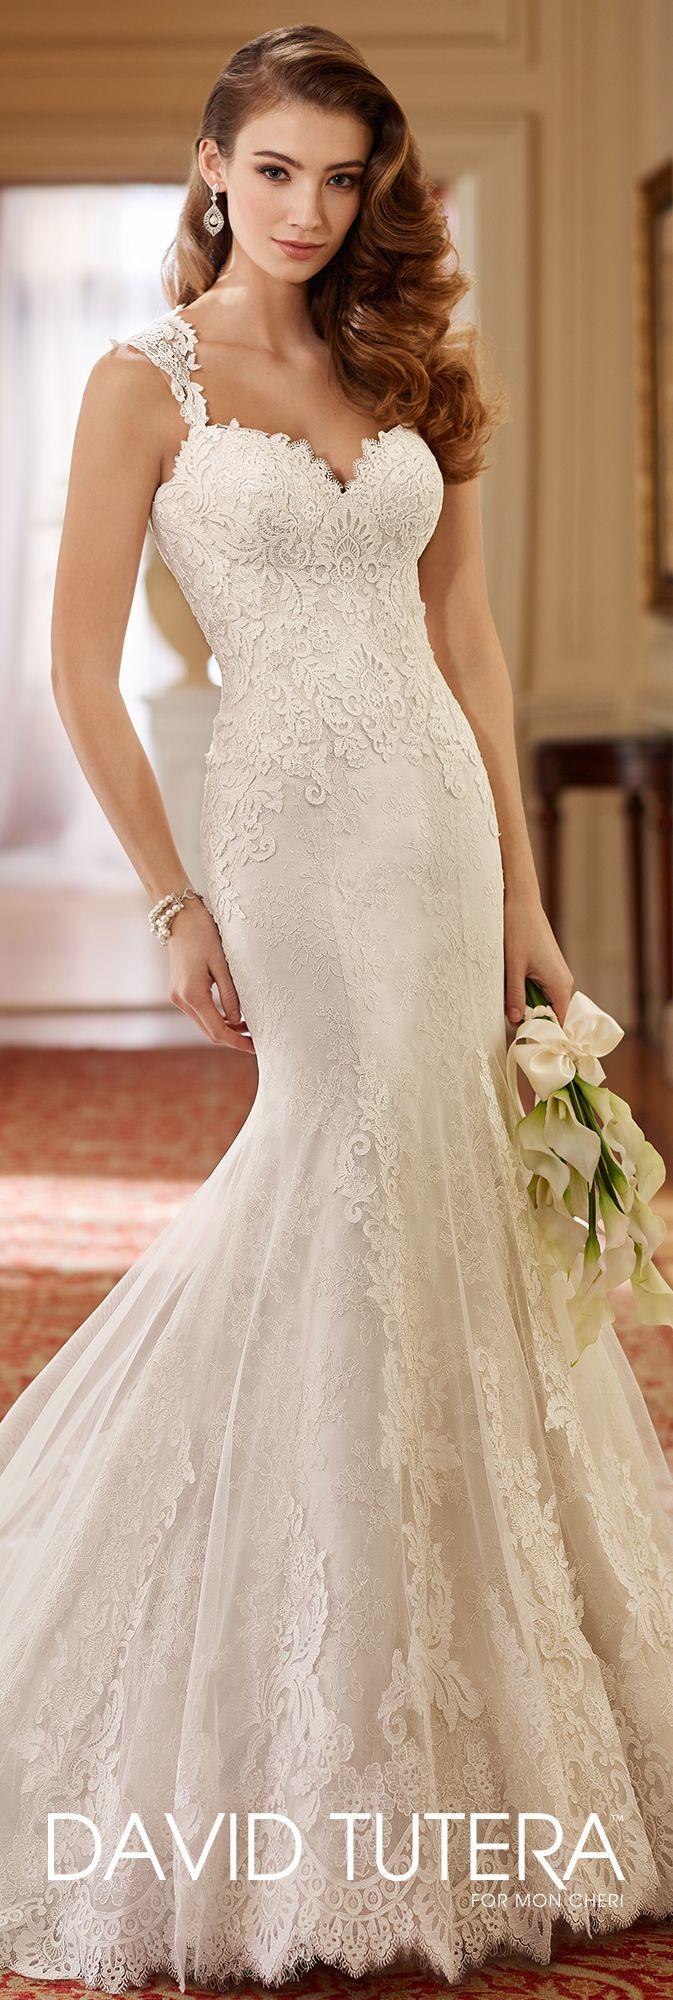 Wedding - Queen Anne Neckline Fit & Flare Lace Wedding Dress- 217221 Helen